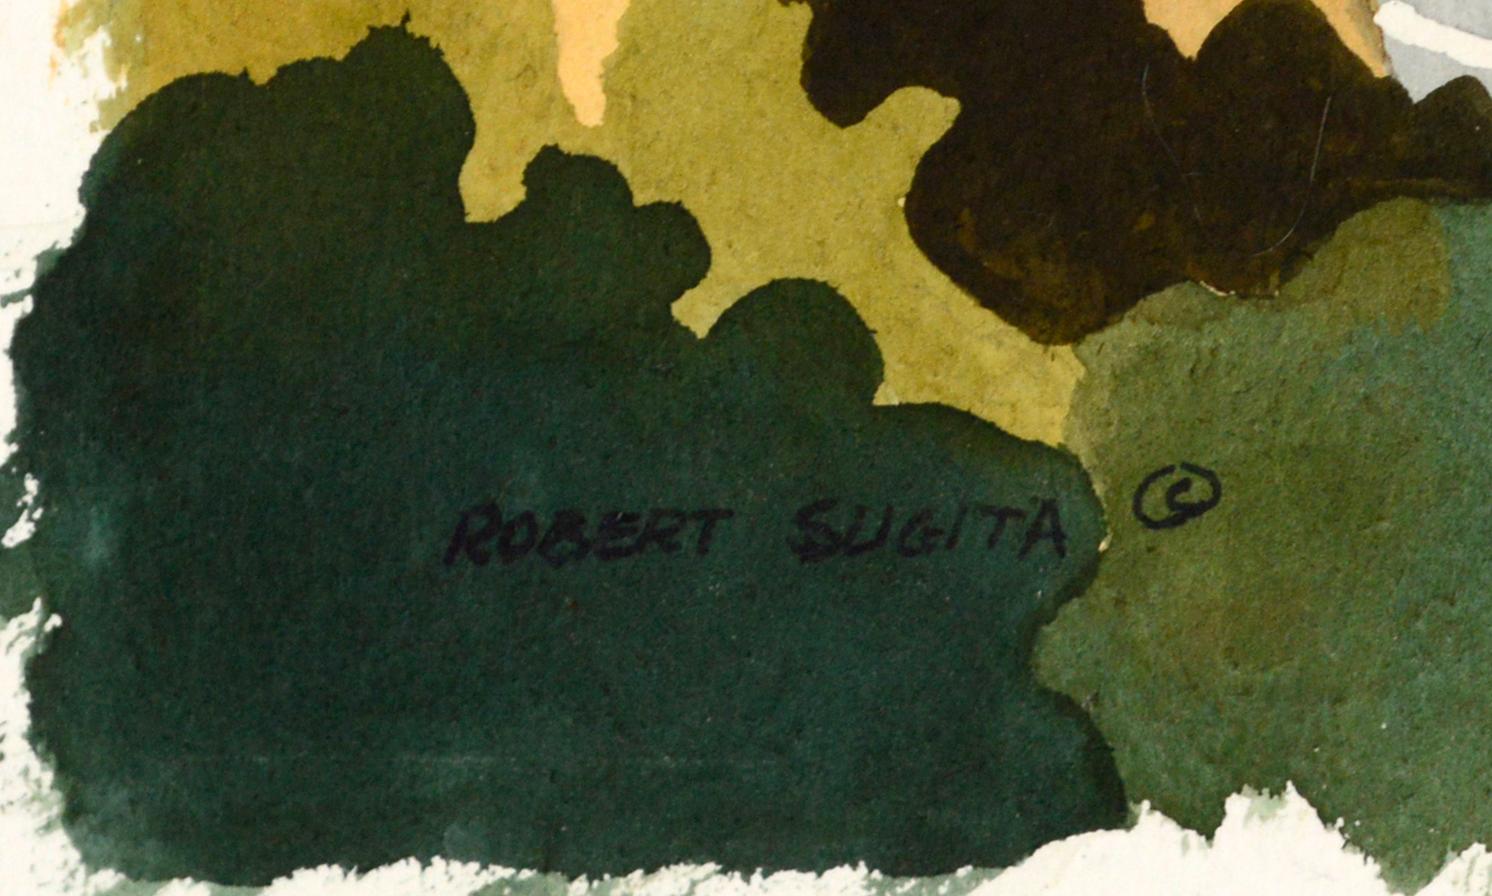 Aquarell auf Papier von San Jose Hills 
Eine Americana-Ansicht der Hügel um San Jose von Robert Sugita (Amerikaner, geb. 1938). Der Künstler aus Cupertino besuchte 1961 die Fresno State und erlernte später die Aquarellmalerei. Er unterhielt ein